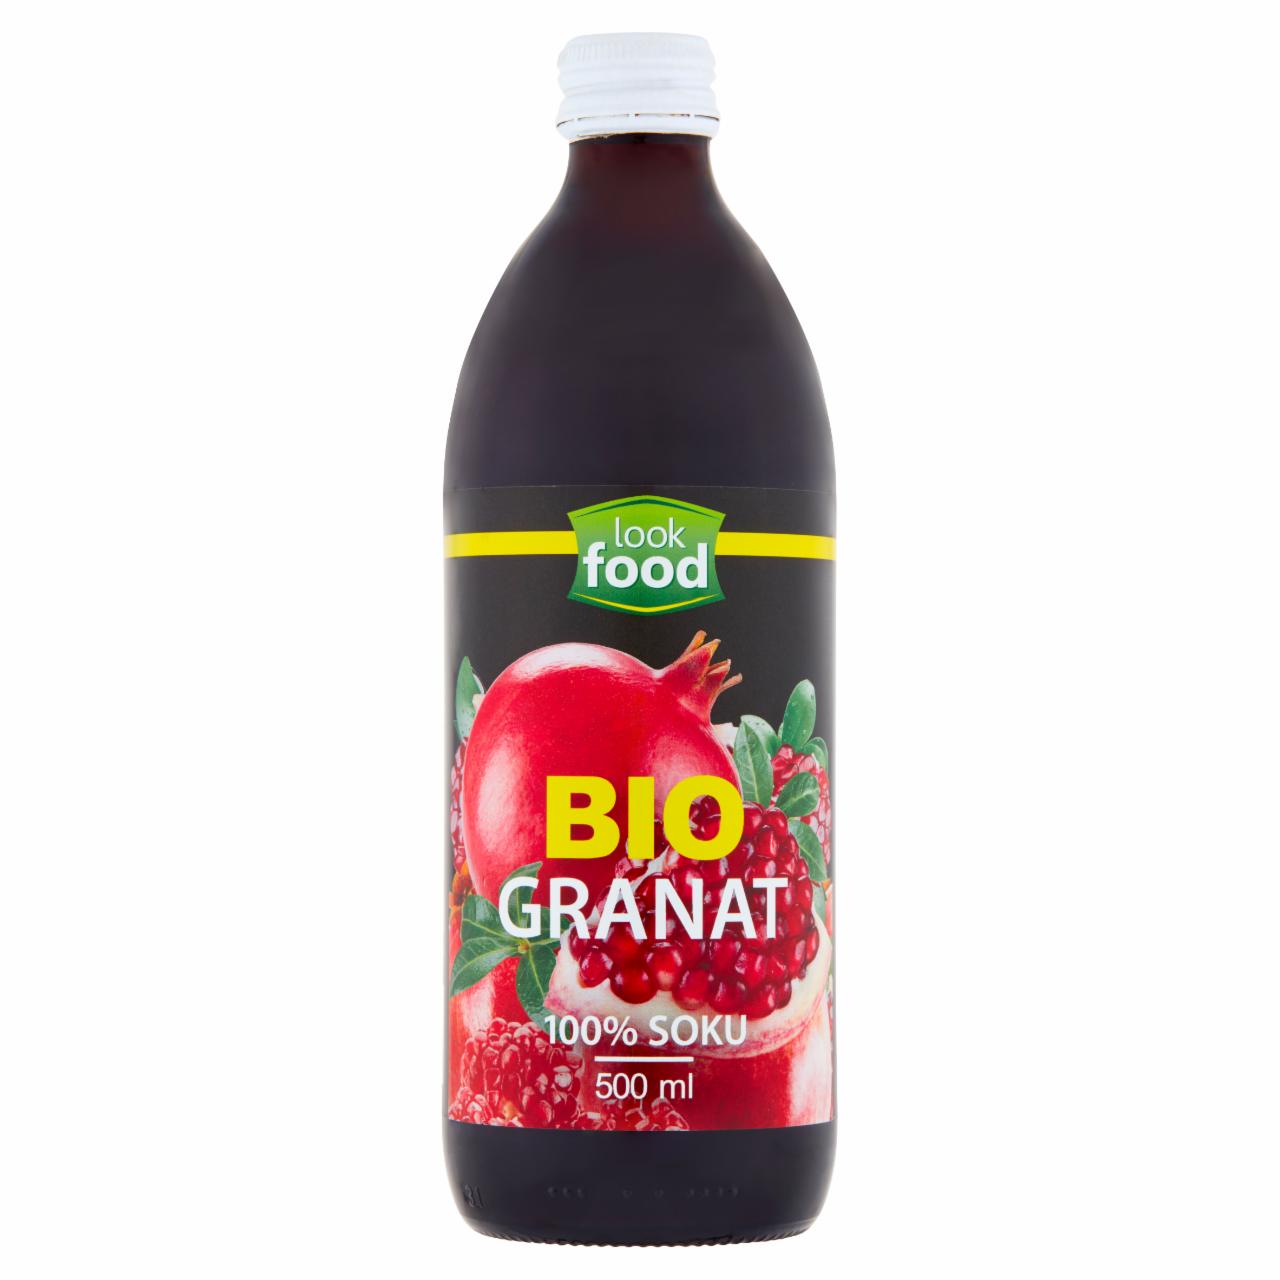 Zdjęcia - Look Food Bio sok granat 500 ml